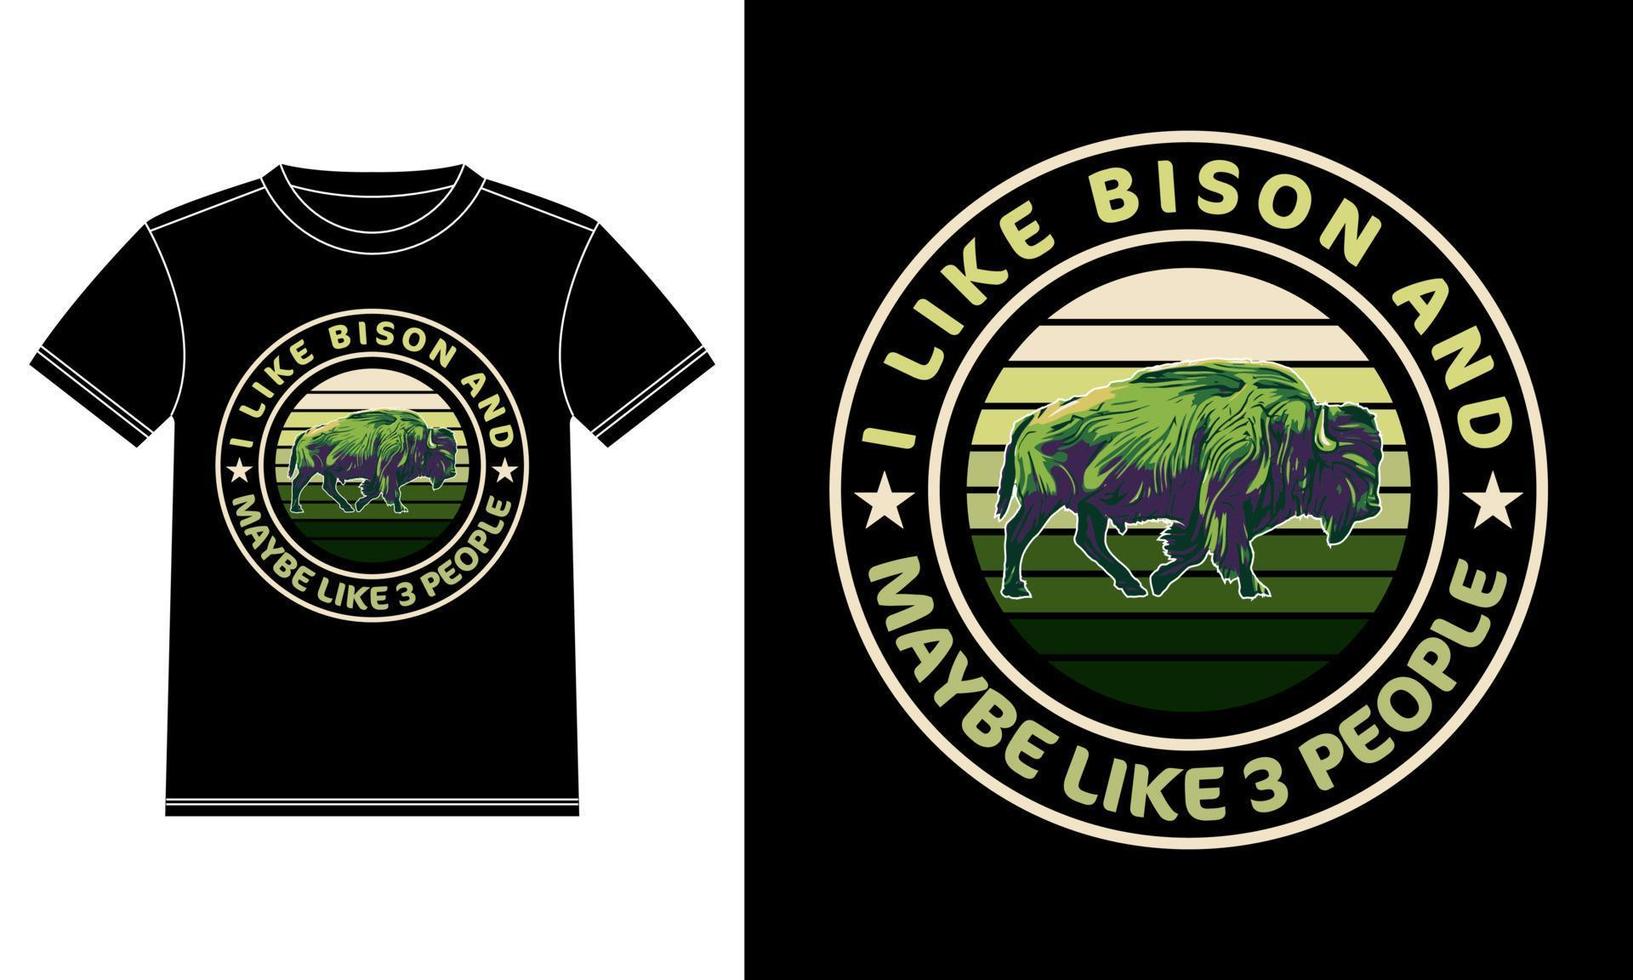 eu gosto de design de camiseta vintage de bison e talvez 3 pessoas vetor